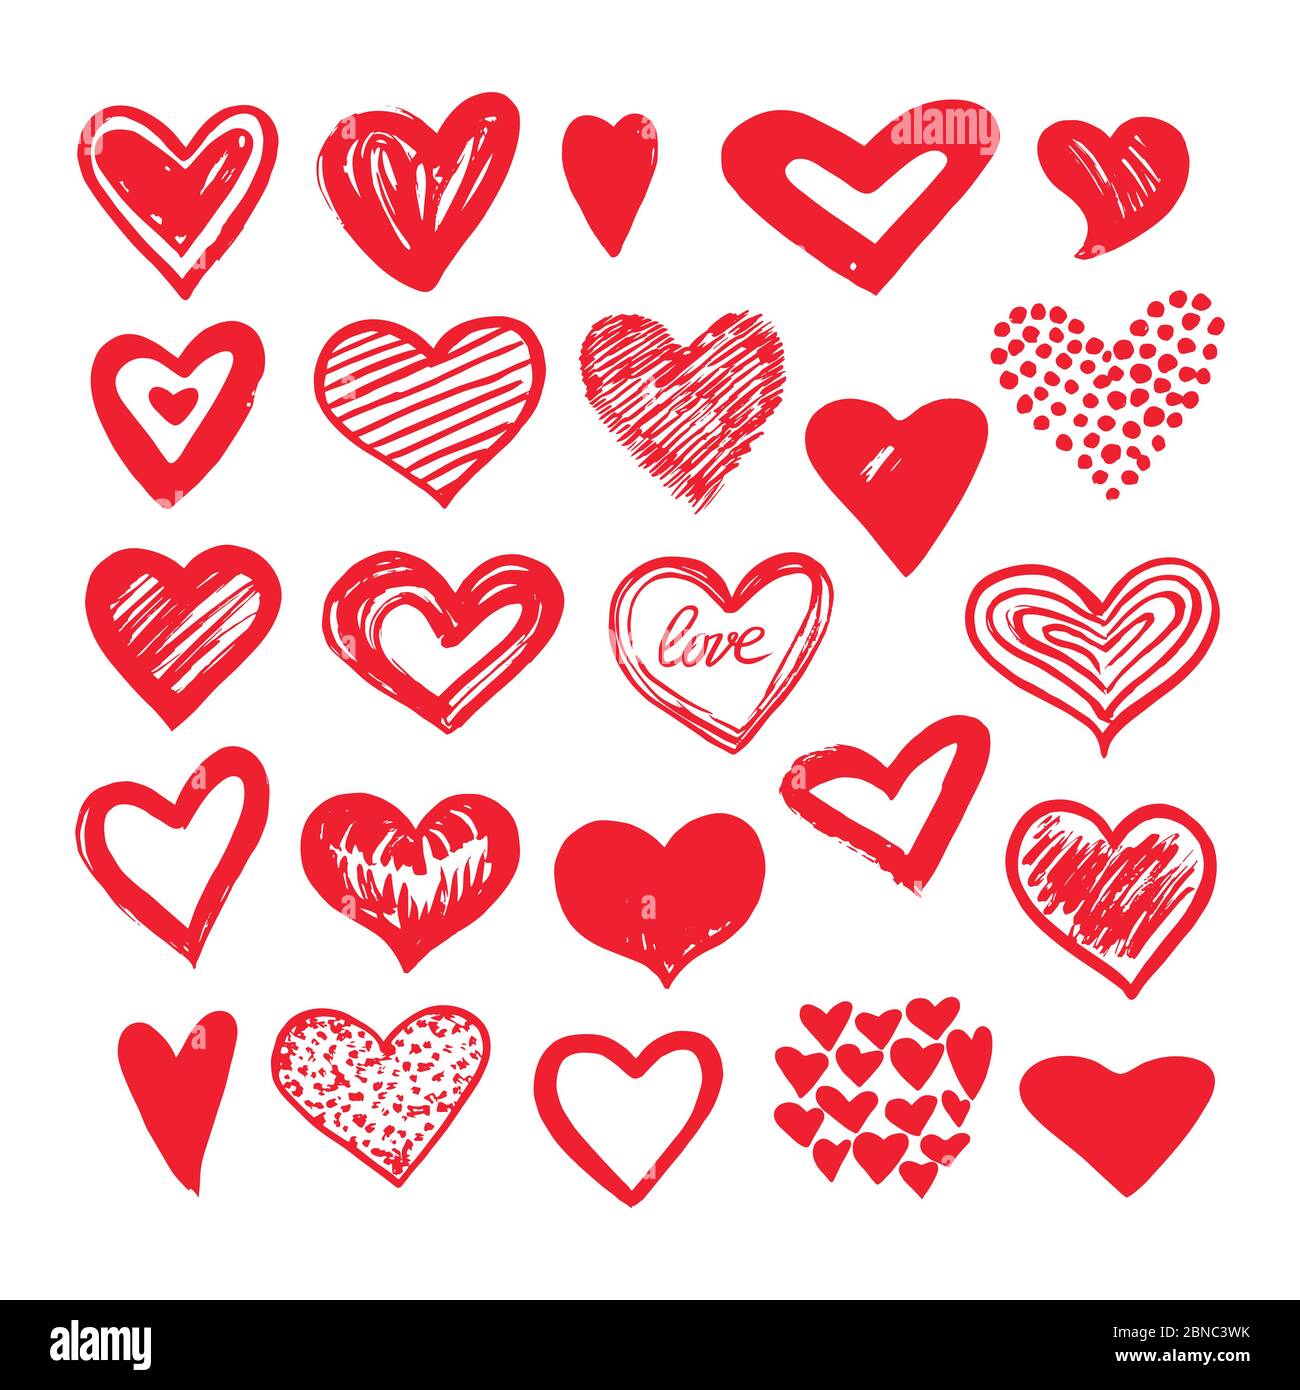 Cuori di schizzo. Romantici elementi d'amore per il doodle. Forme con cuore valentine le icone vettoriali giorno. Illustrazione del disegno a forma di cuore Illustrazione Vettoriale